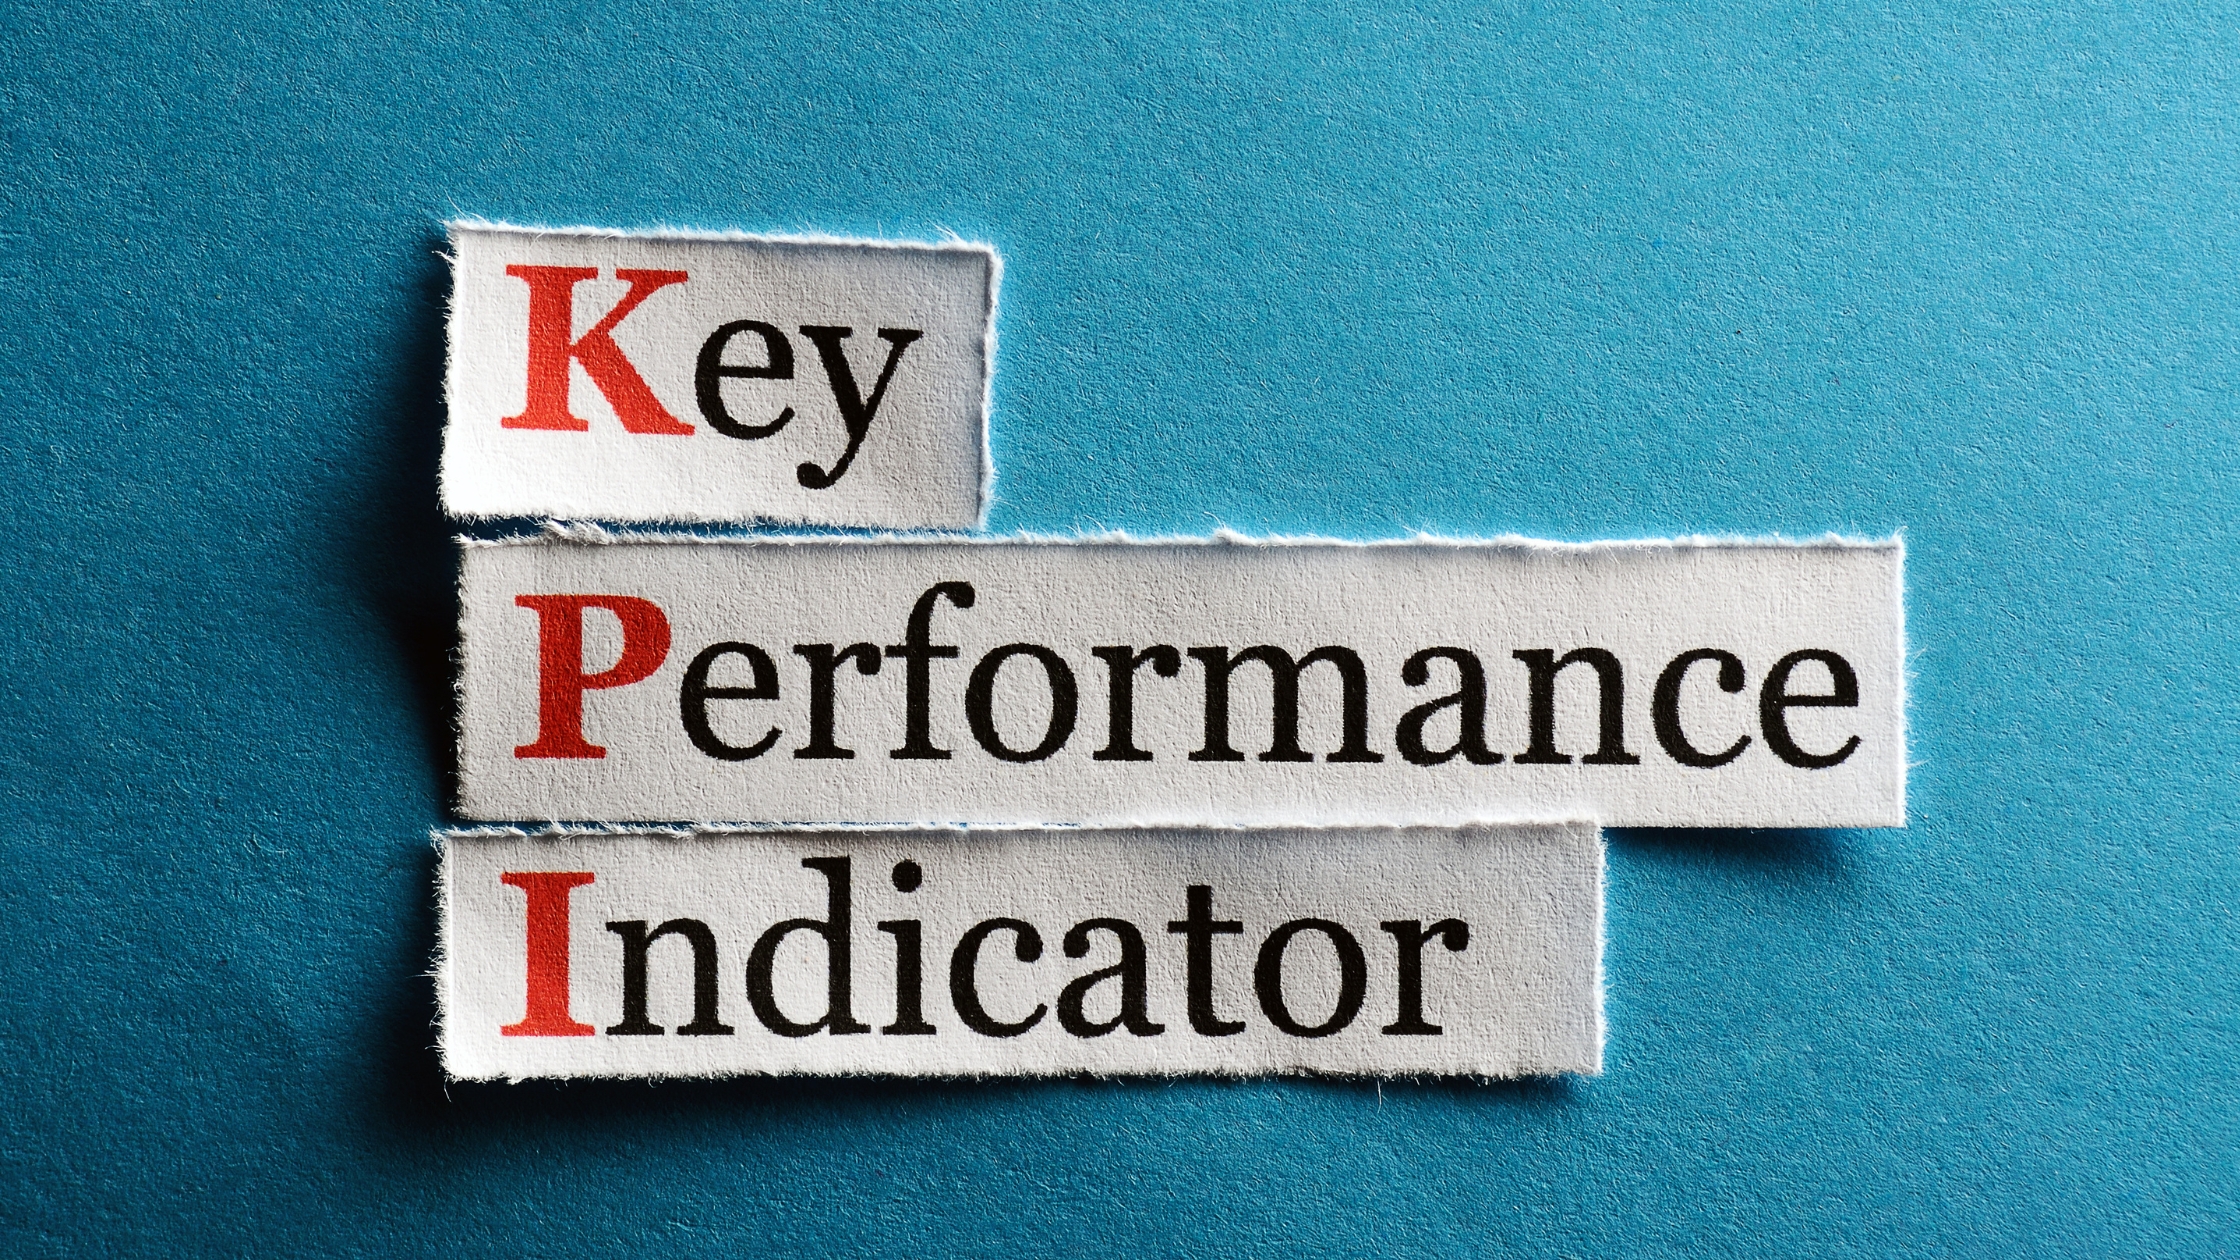 Key performance indicator (KPI) tracking